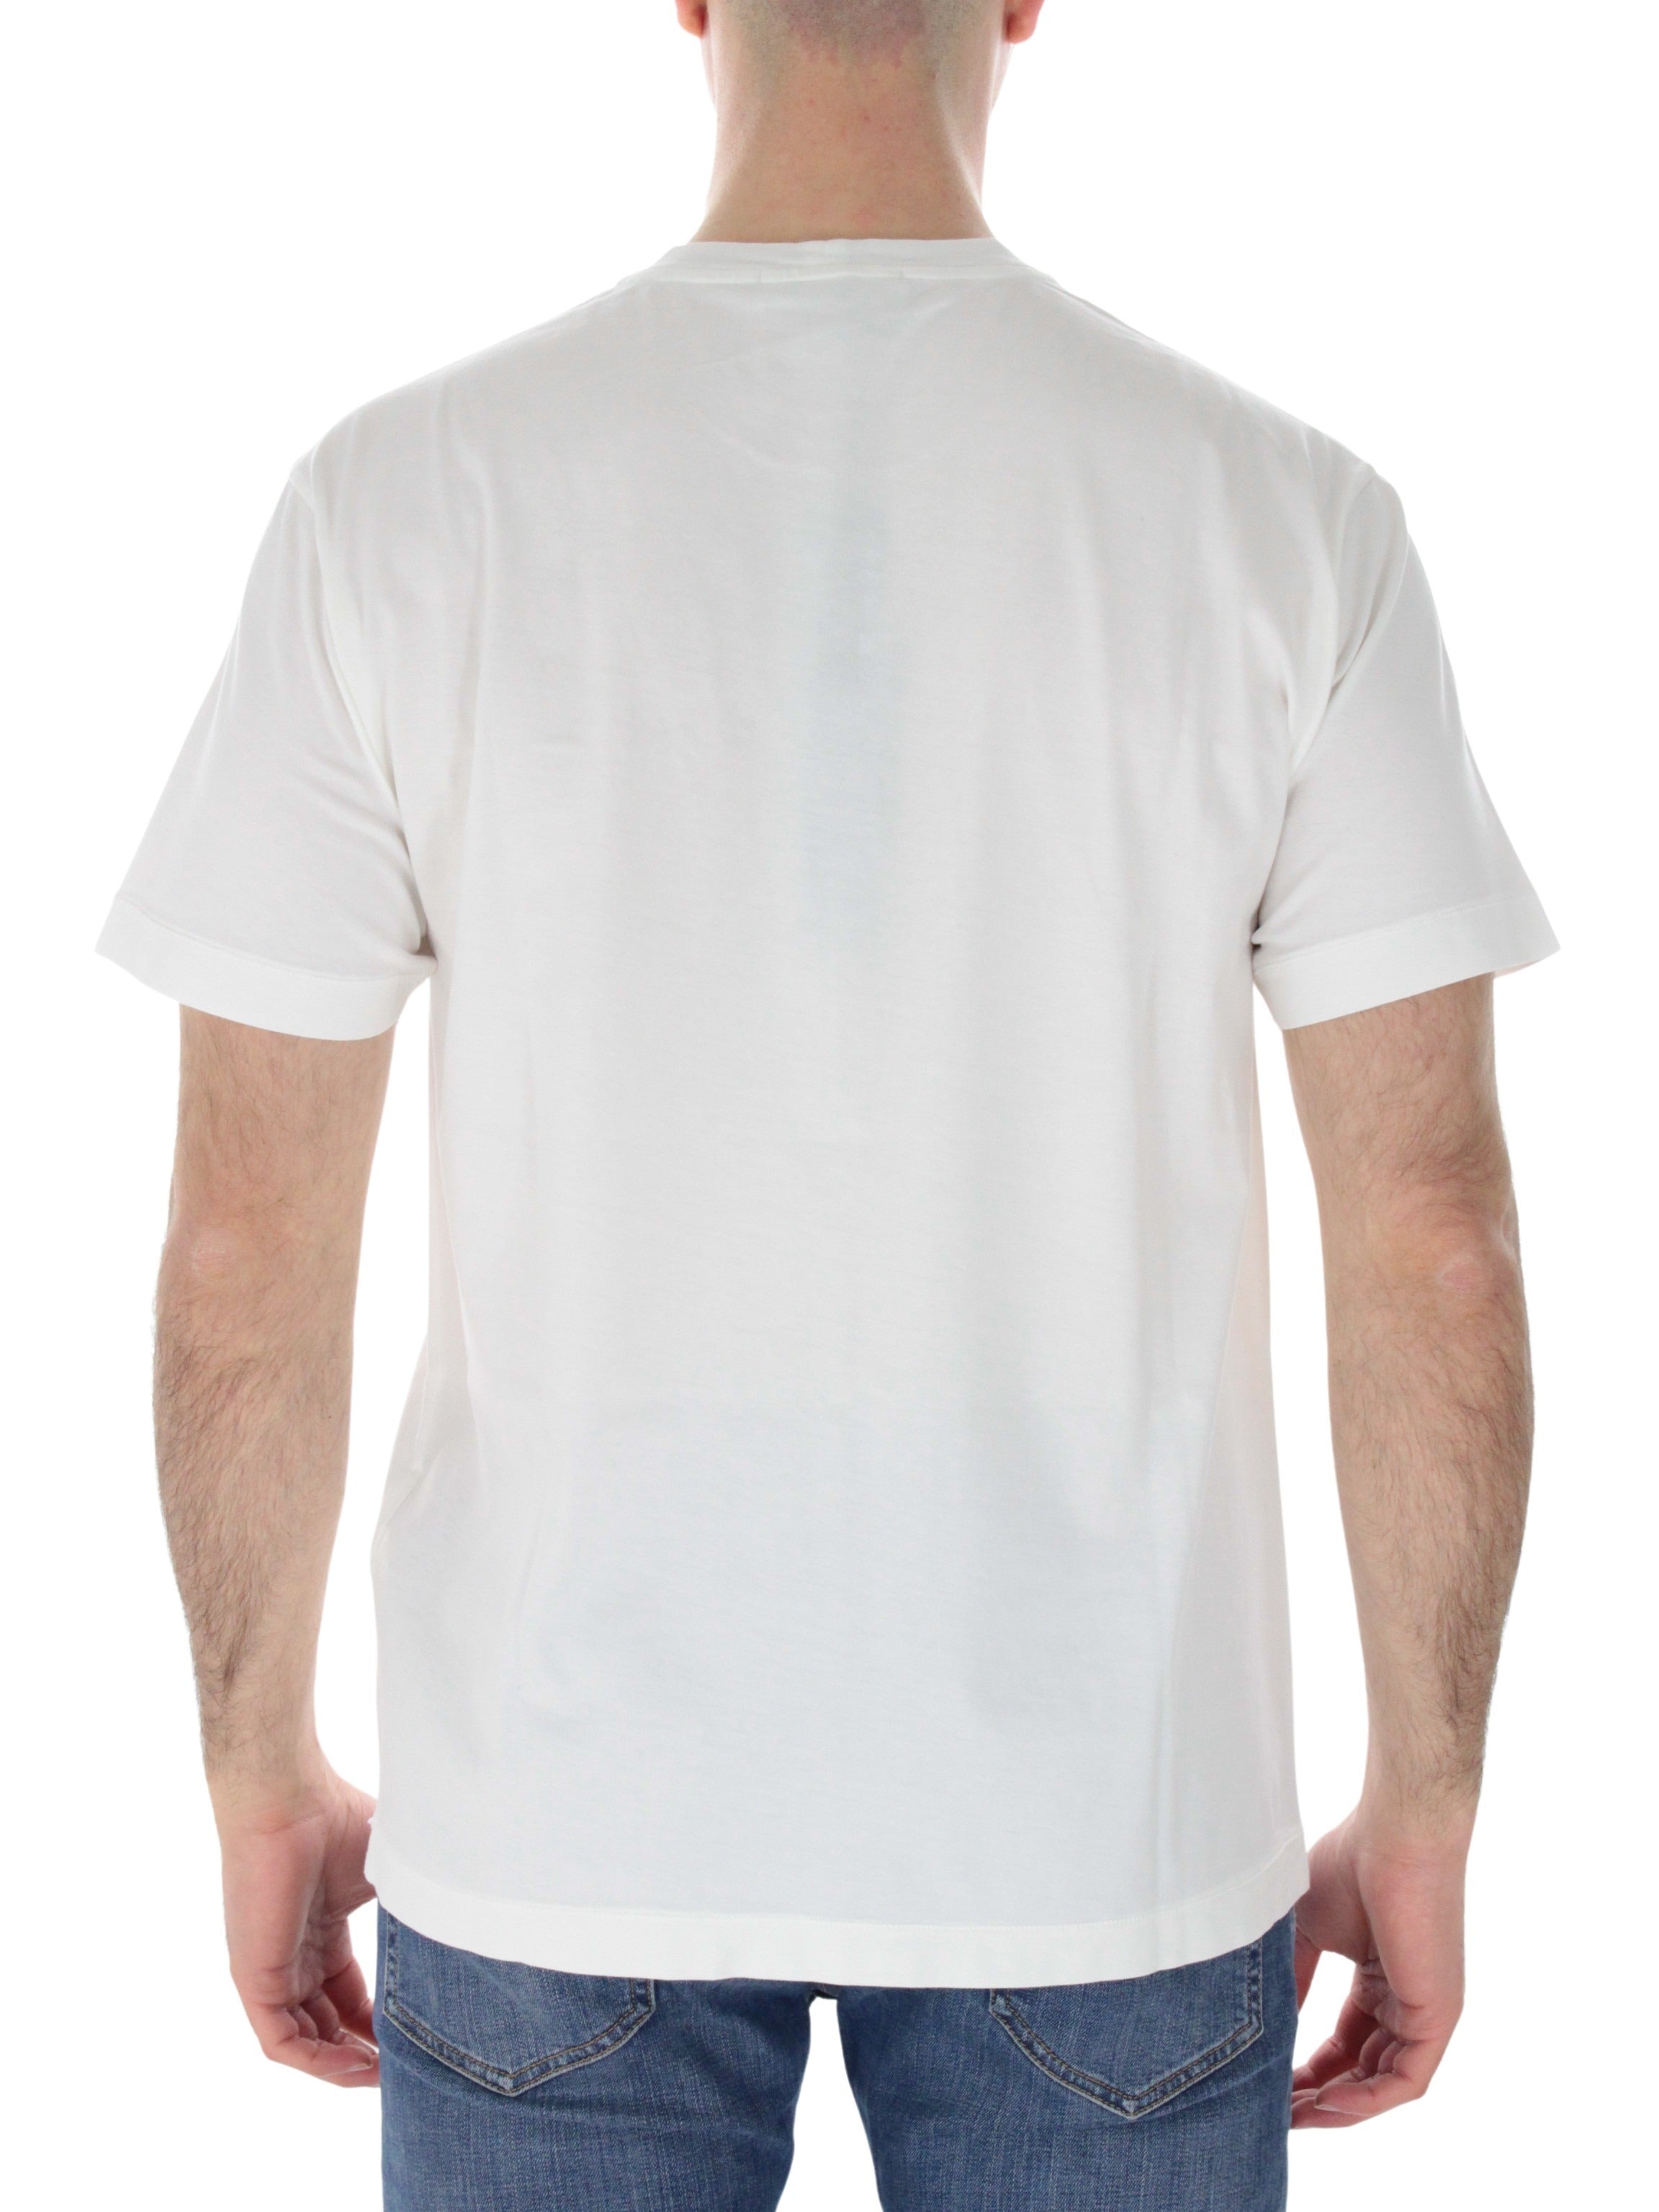 White t-shirt 101524113